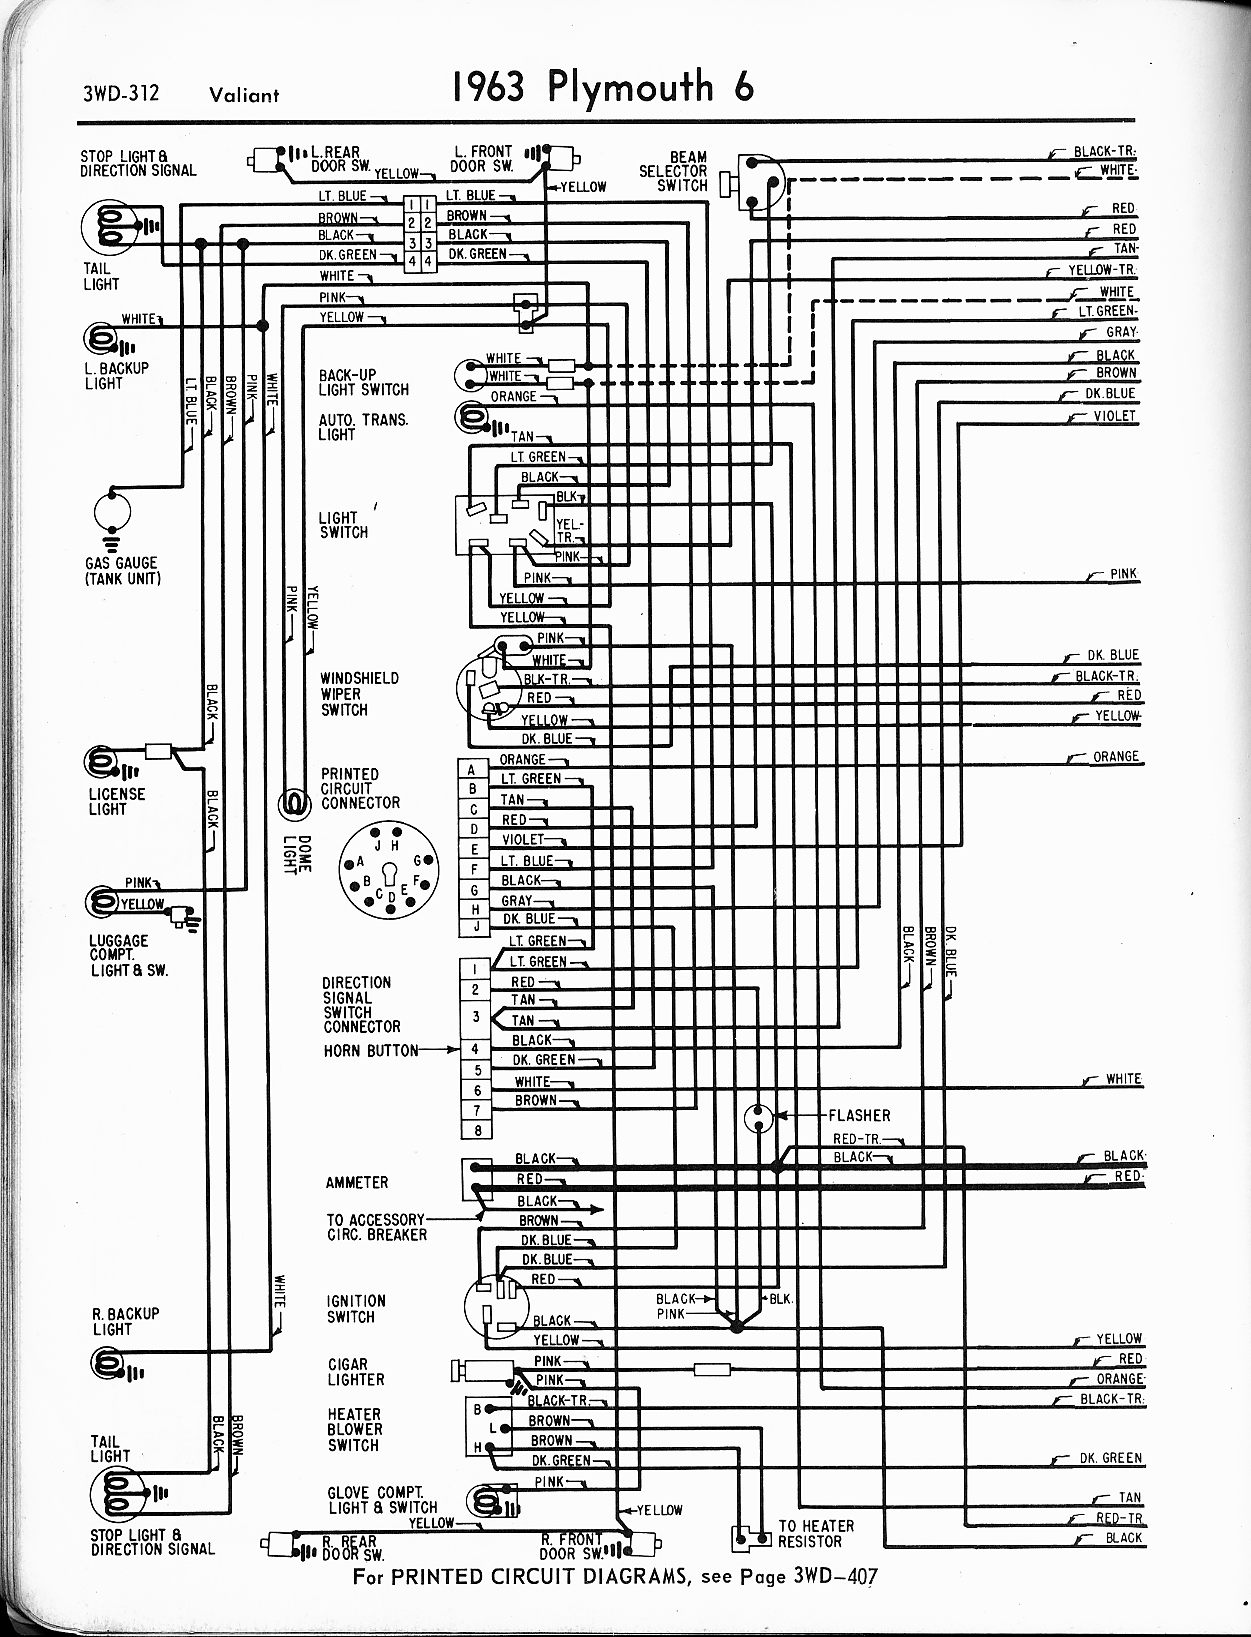 Wiring Manual PDF: 1934 Chrysler Positive Ground Wiring Diagram